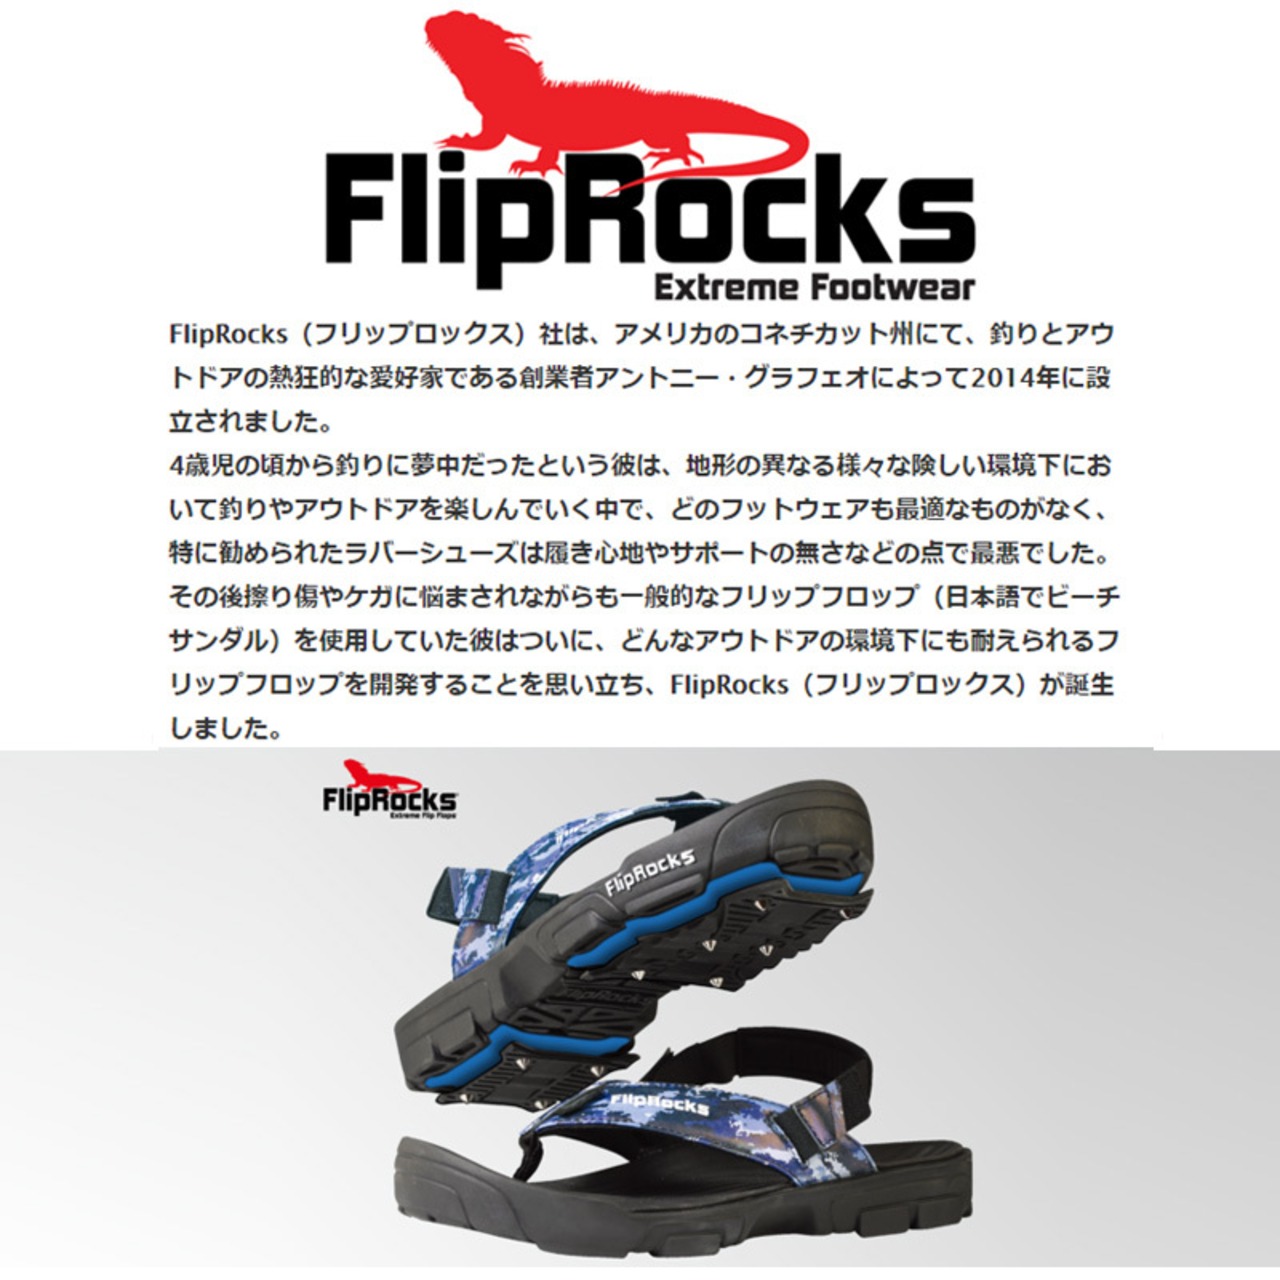 FlipRocks(フリップロックス) フリップフロップ パッドセット G-レックス ソール スポーツサンダル トレッキングシューズ アウトドア 用品 キャンプ グッズ